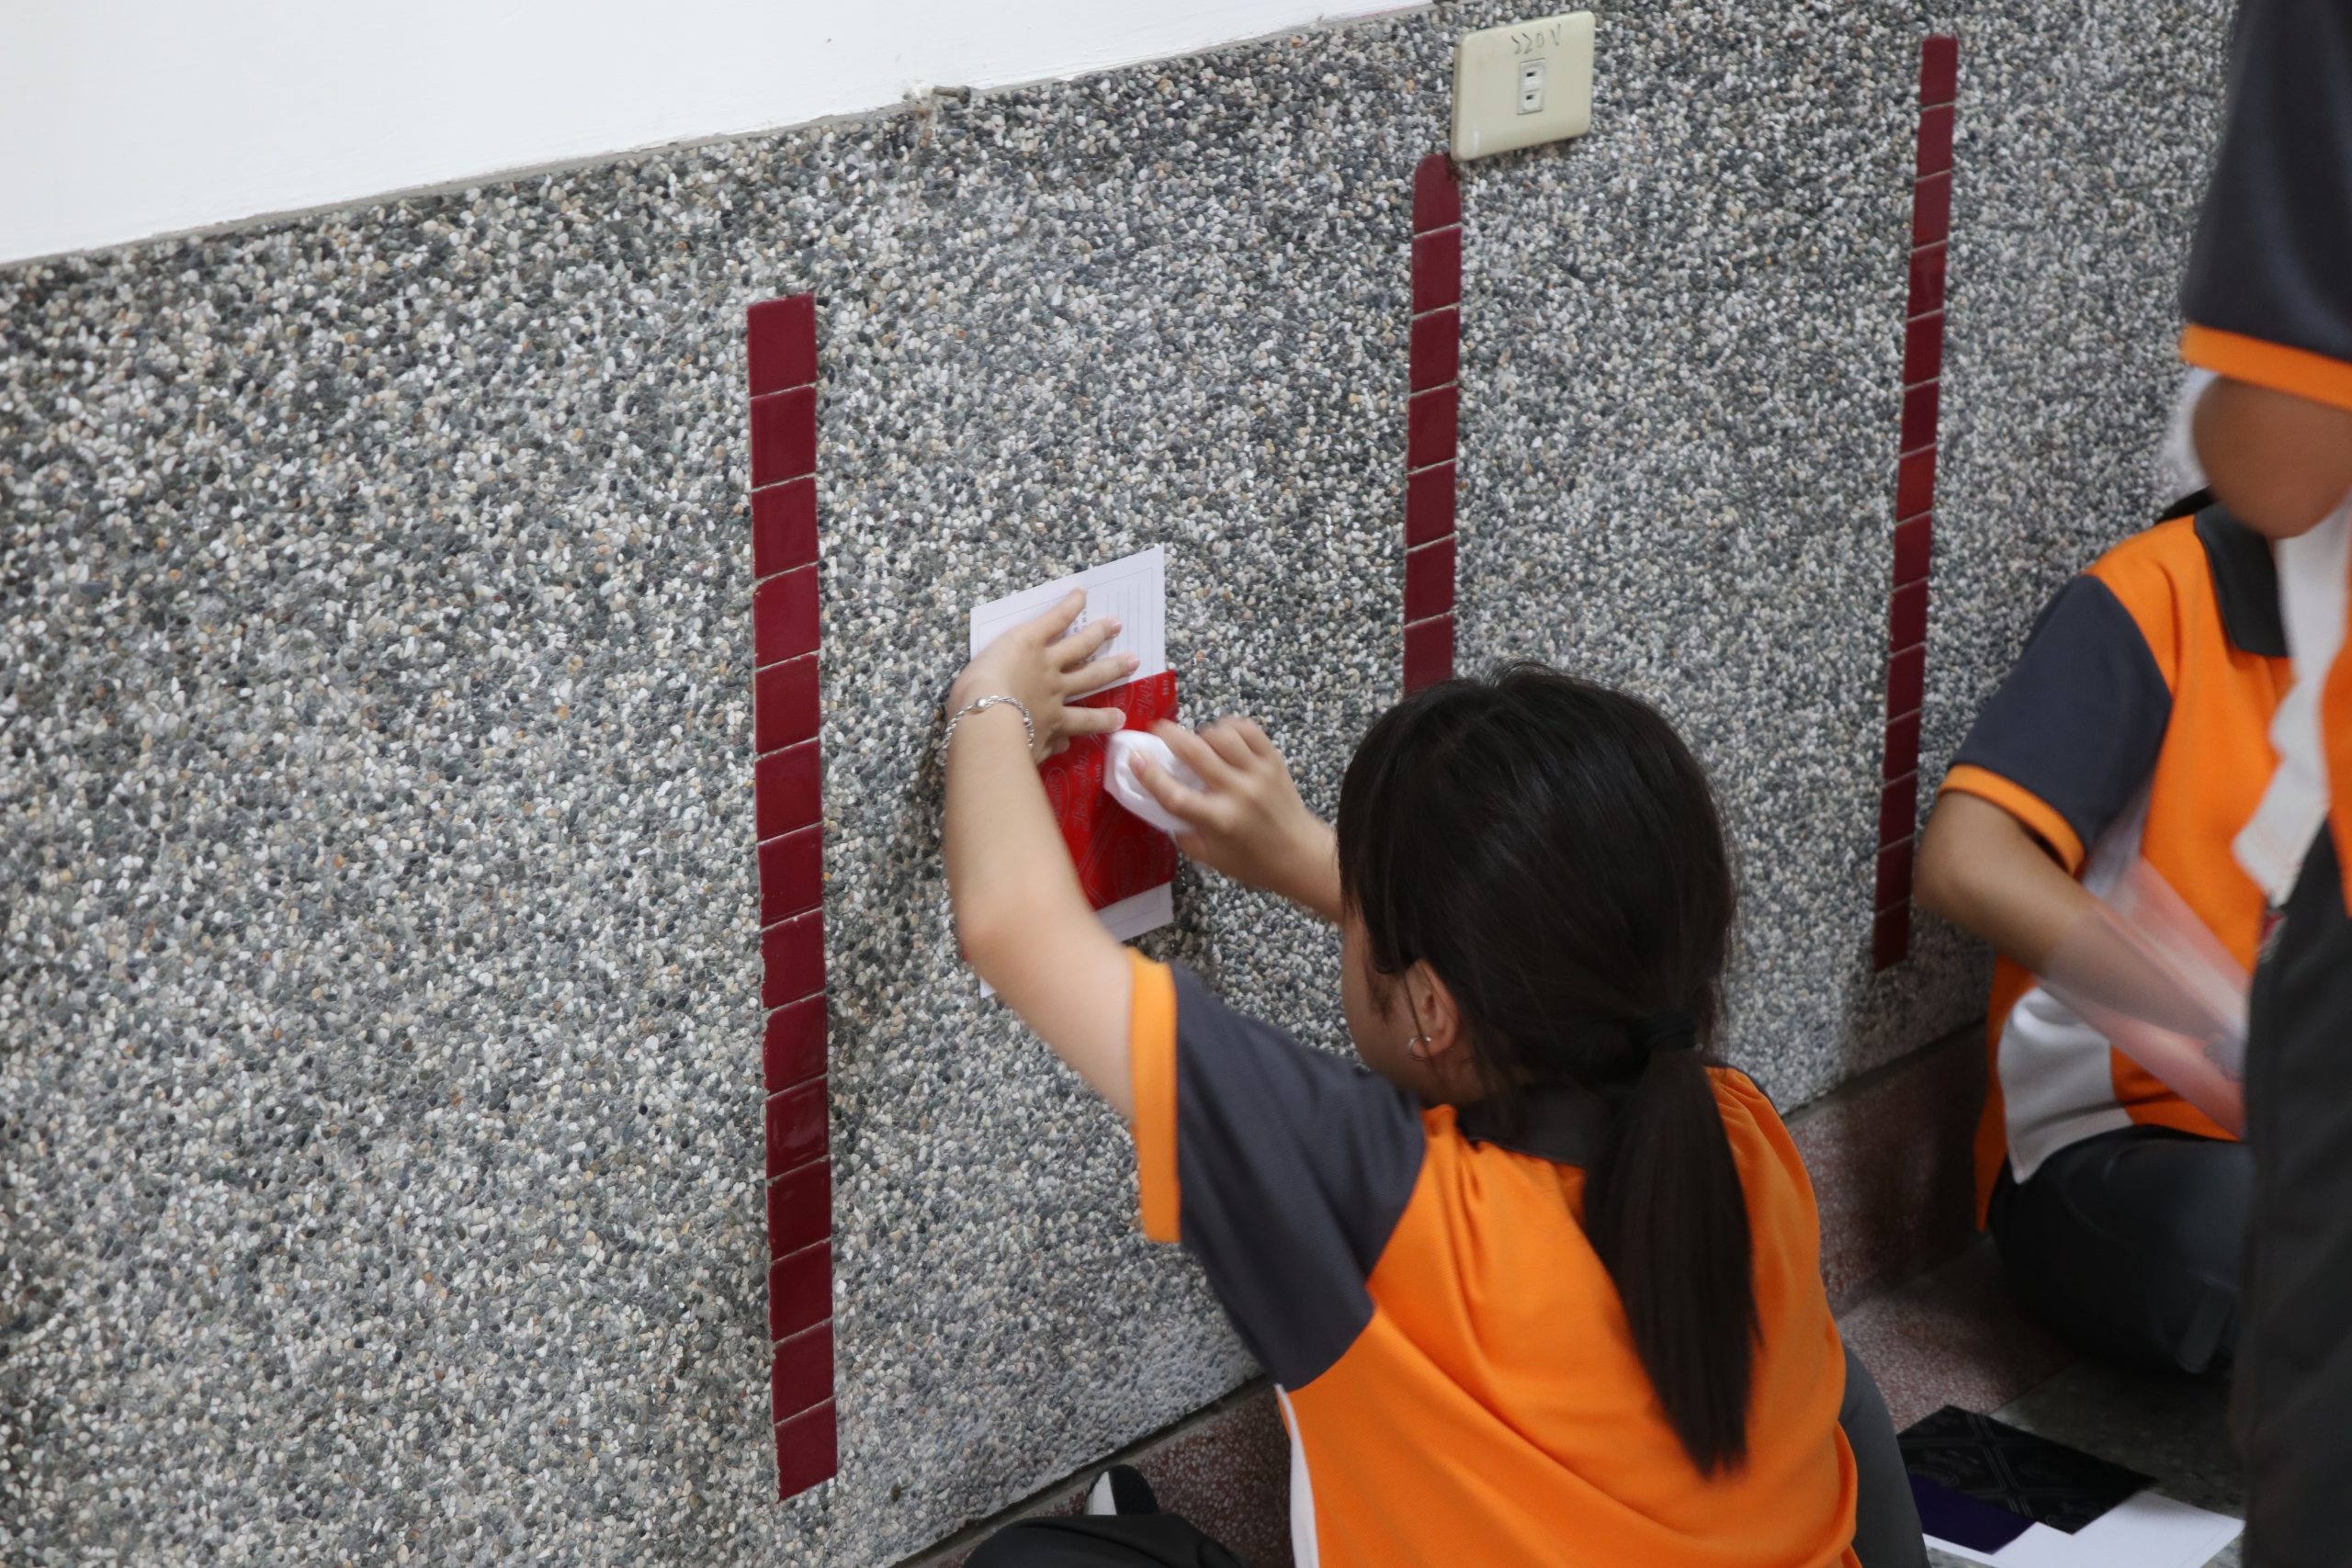 111學年度第二學期於臺中市大里區健民國民小學施辦質感採集課程實作紀錄系列照片共40張